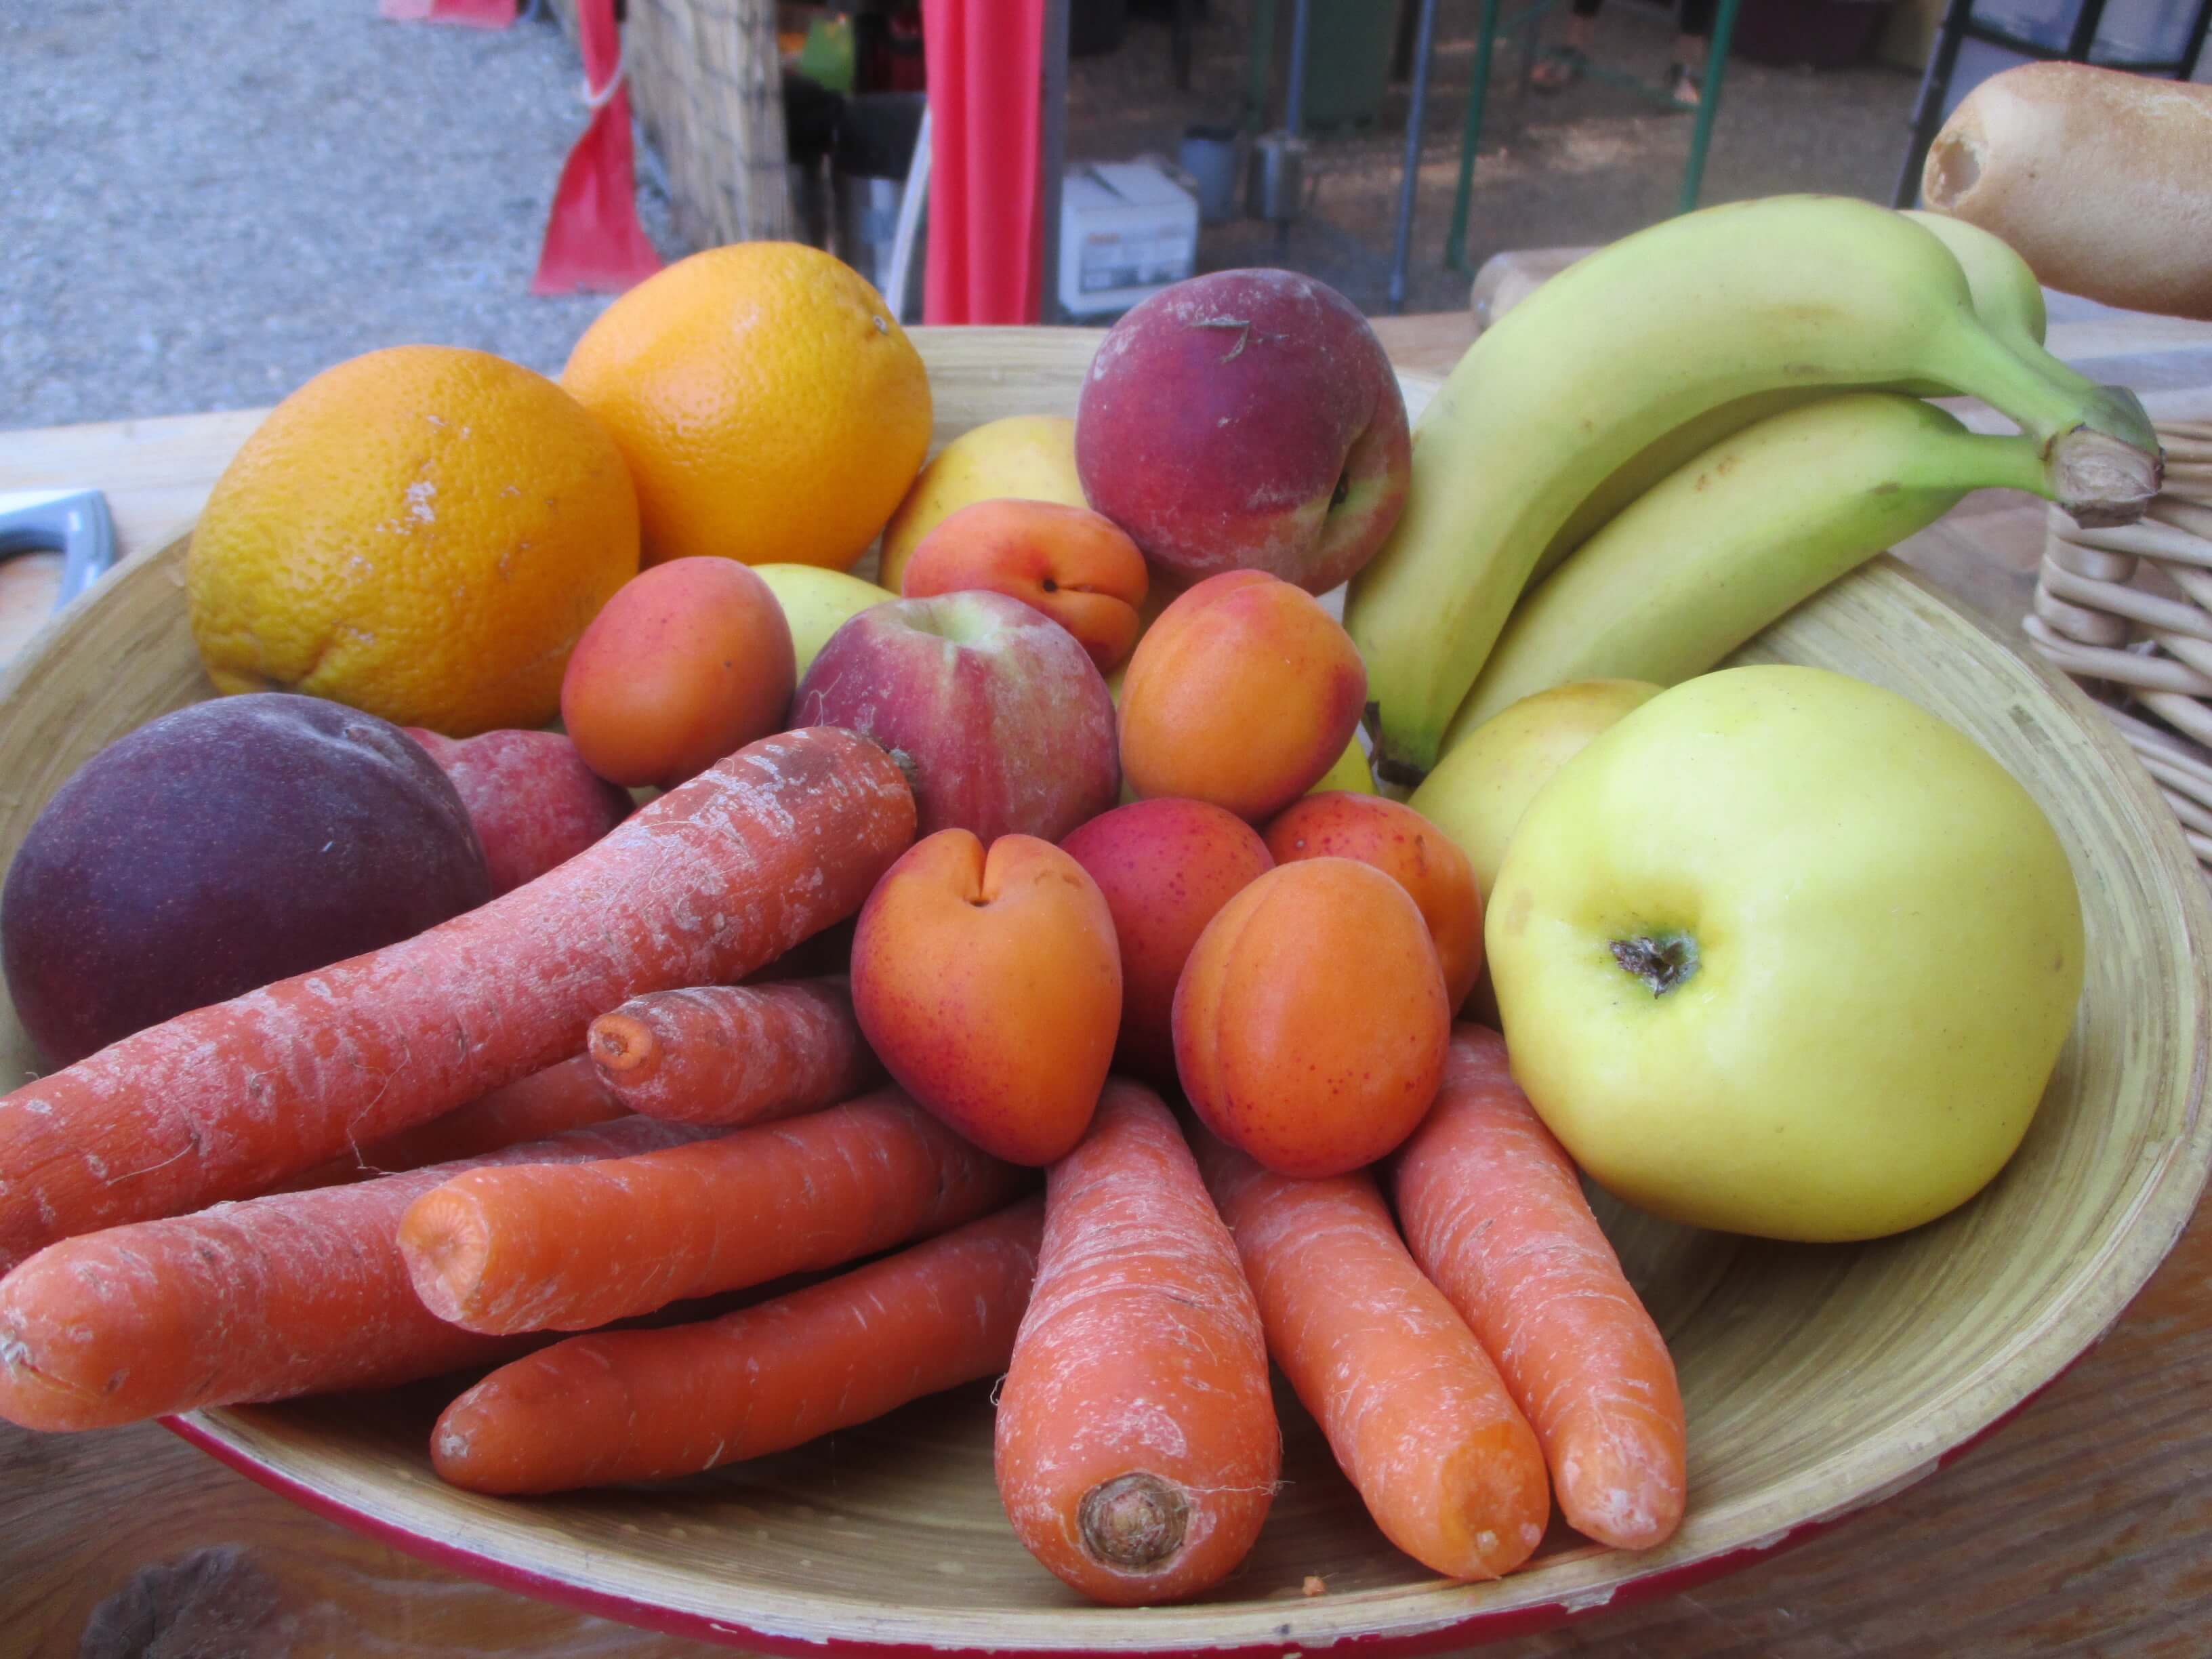 Obst und Gemüseteller als Snack für zwischendurch